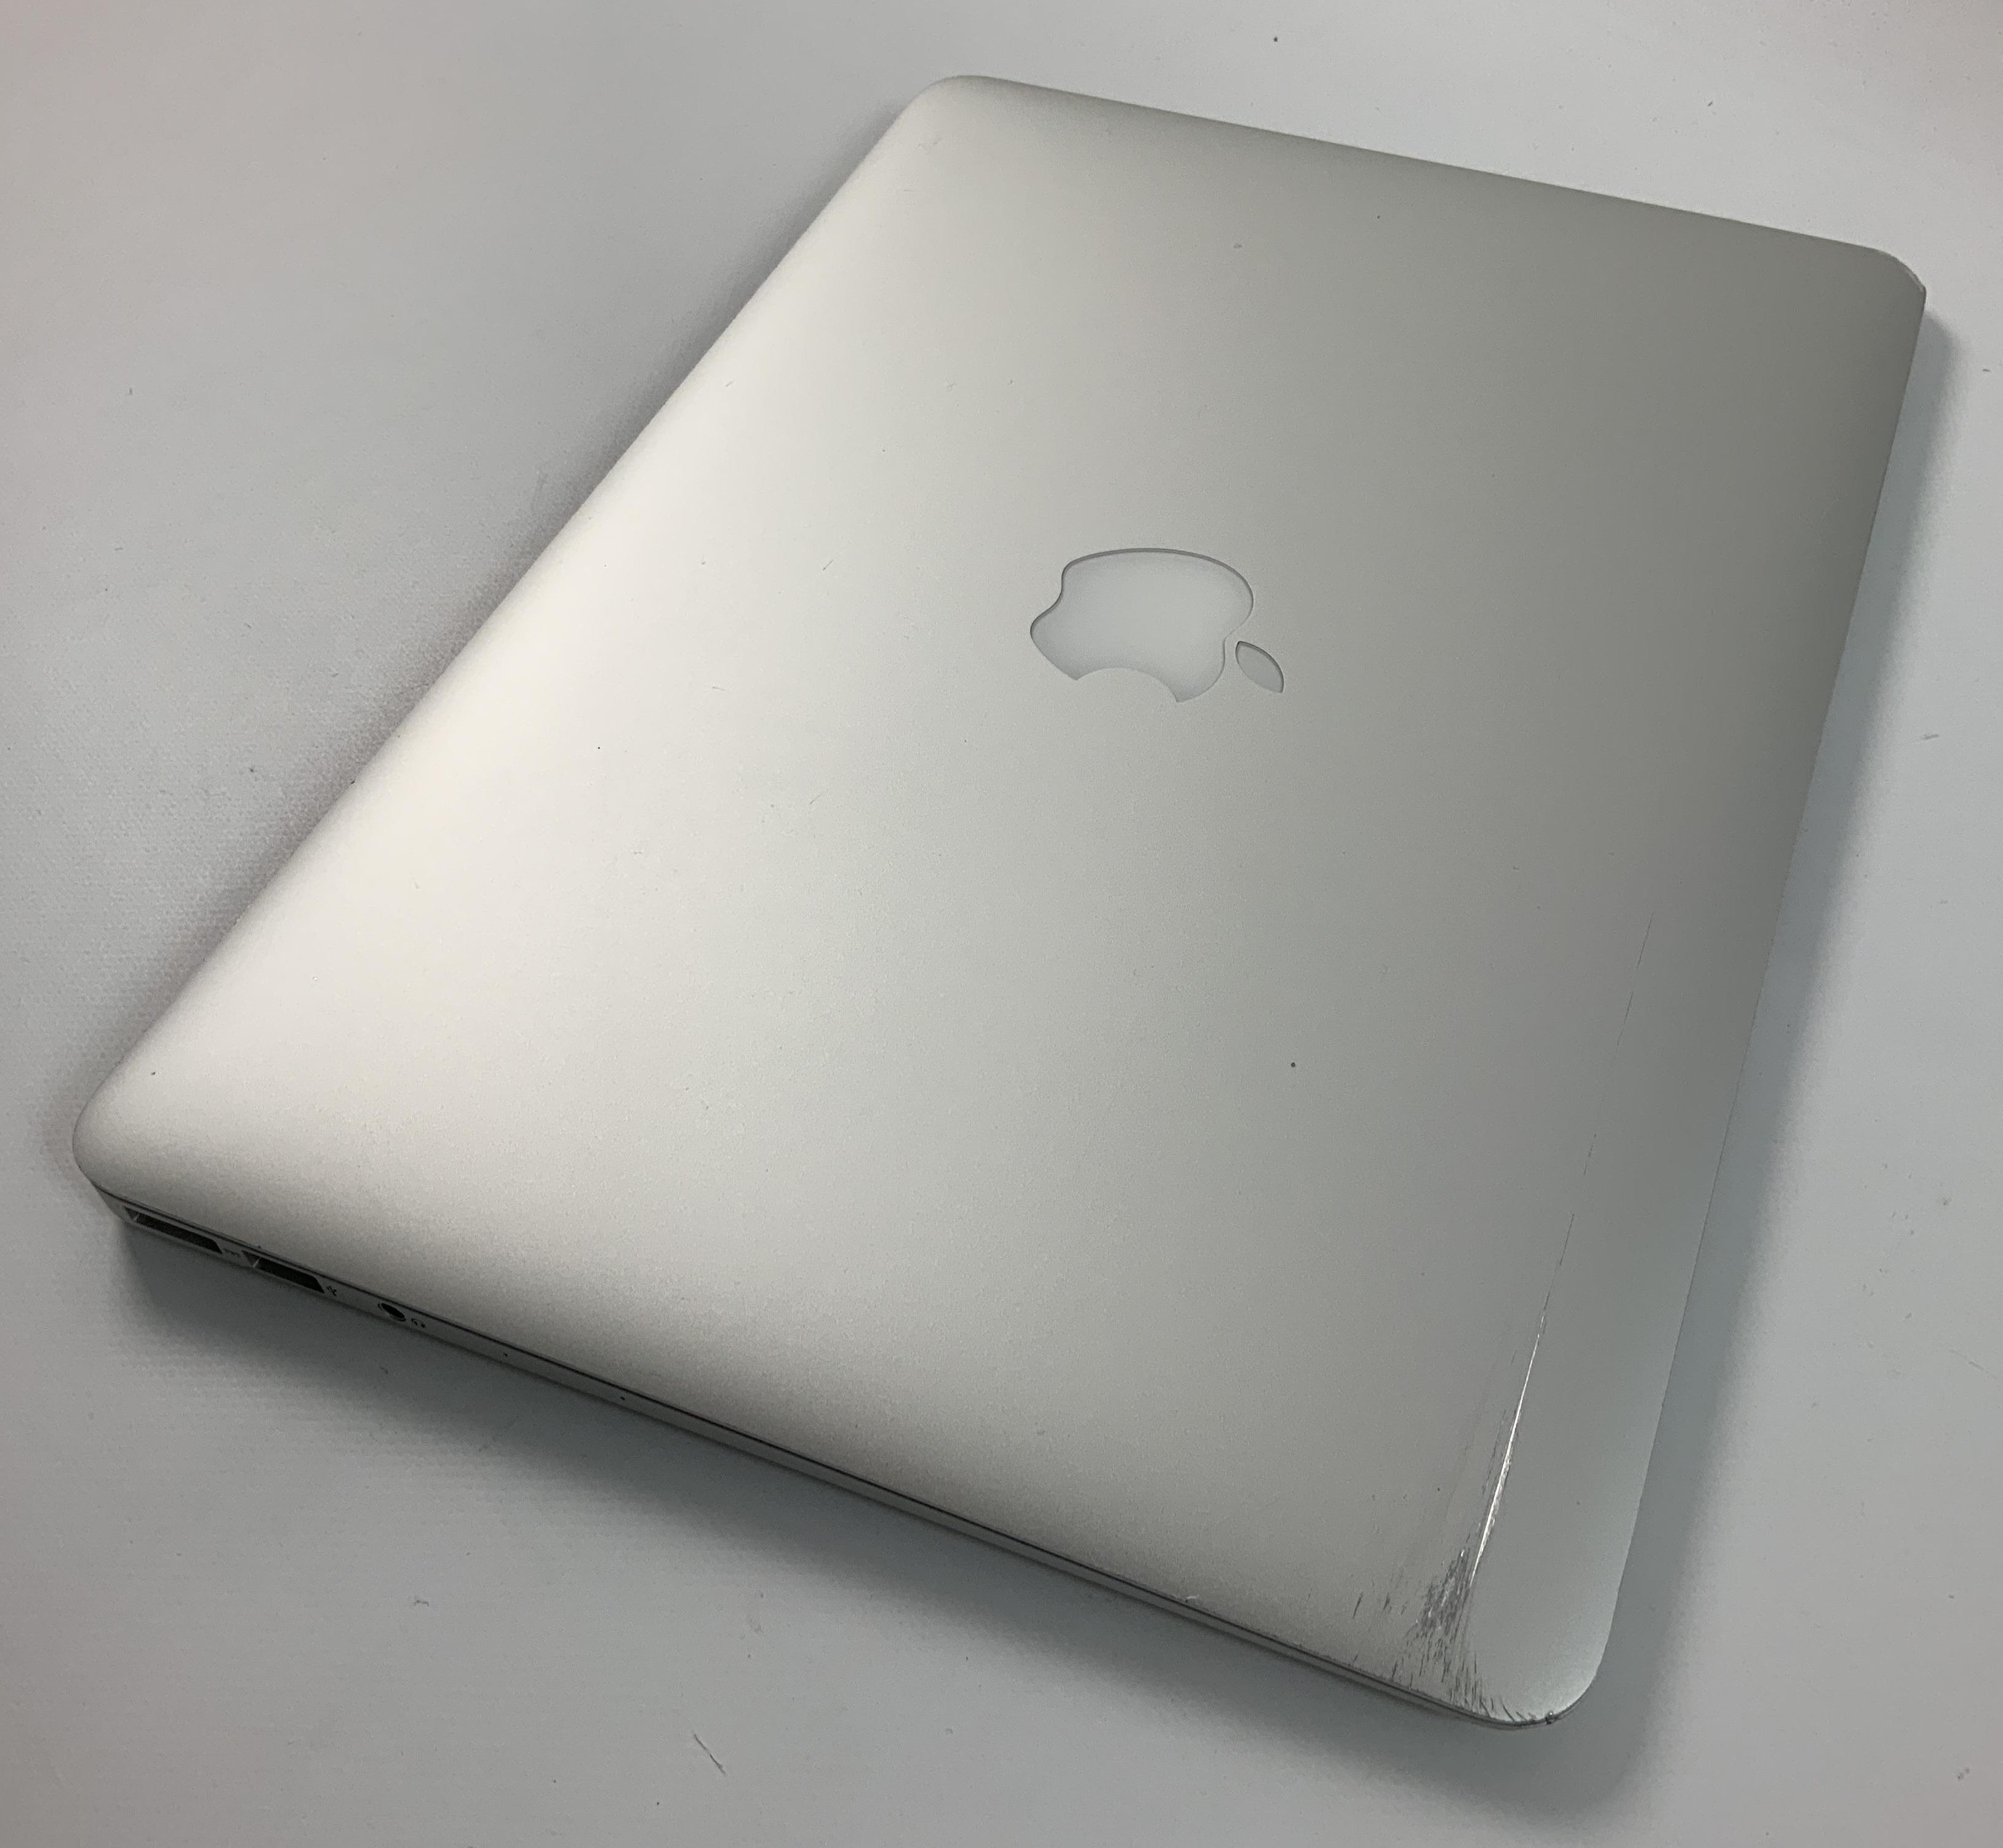 MacBook Air 13" Mid 2017 (Intel Core i5 1.8 GHz 8 GB RAM 256 GB SSD), Intel Core i5 1.8 GHz, 8 GB RAM, 256 GB SSD, Kuva 3